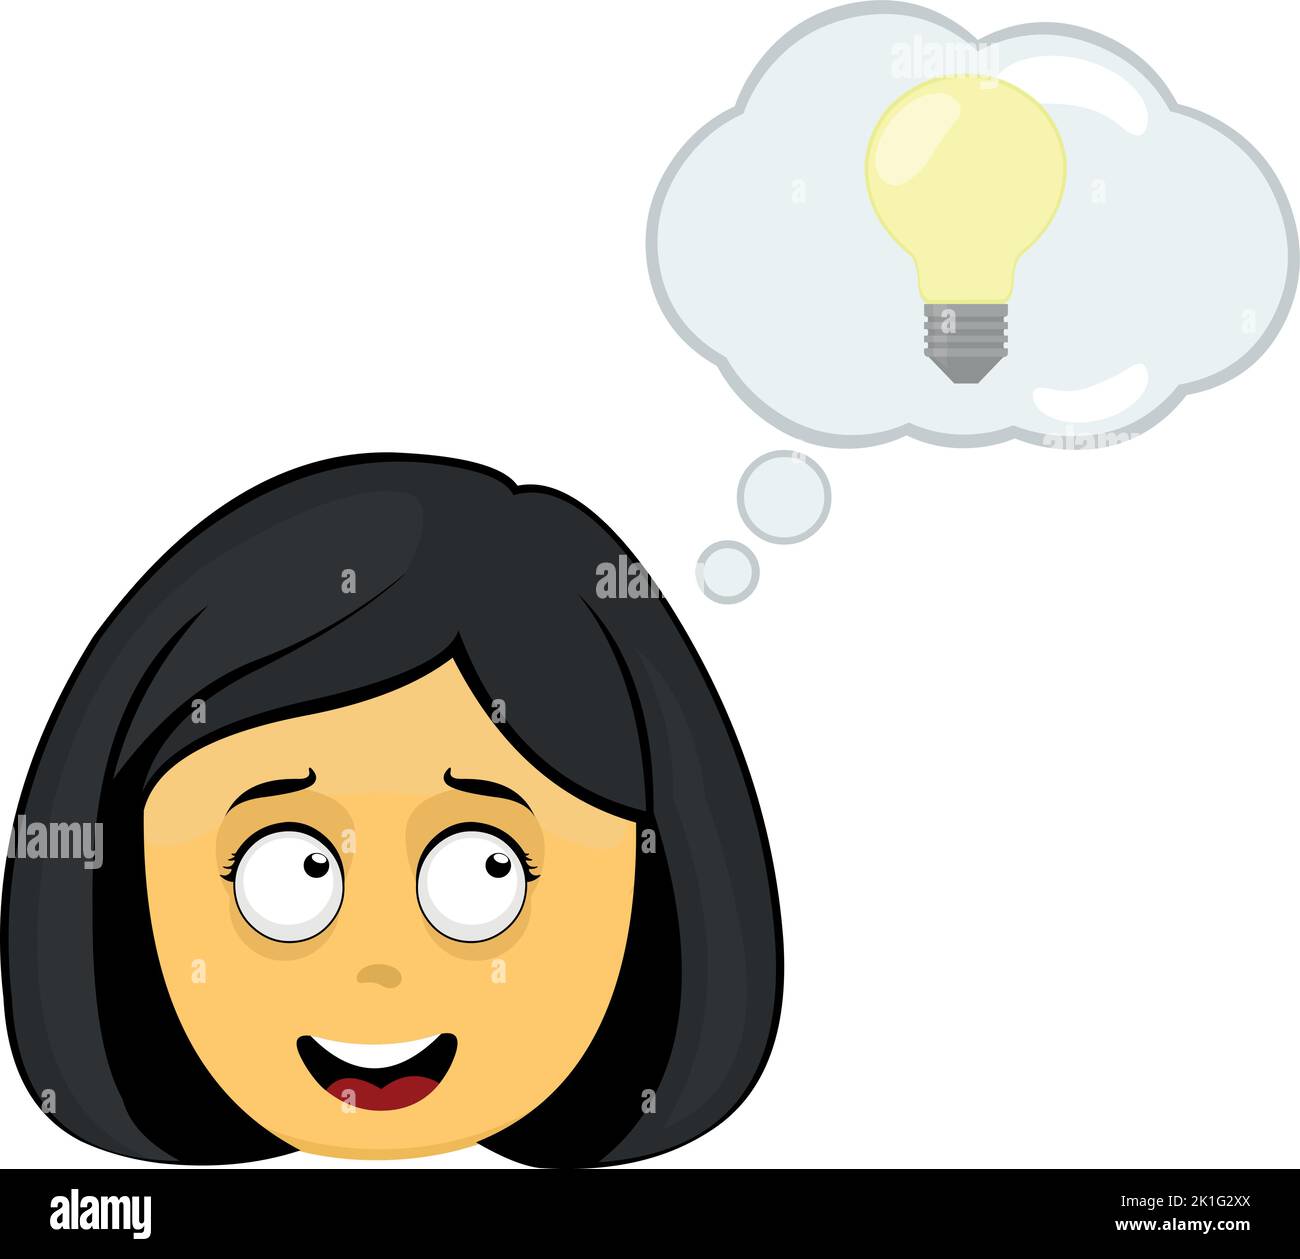 Vettore emoji illustrazione di una donna cartoon giallo, con una nuvola di pensiero con una lampadina, nel concetto di buona idea o creatività Illustrazione Vettoriale